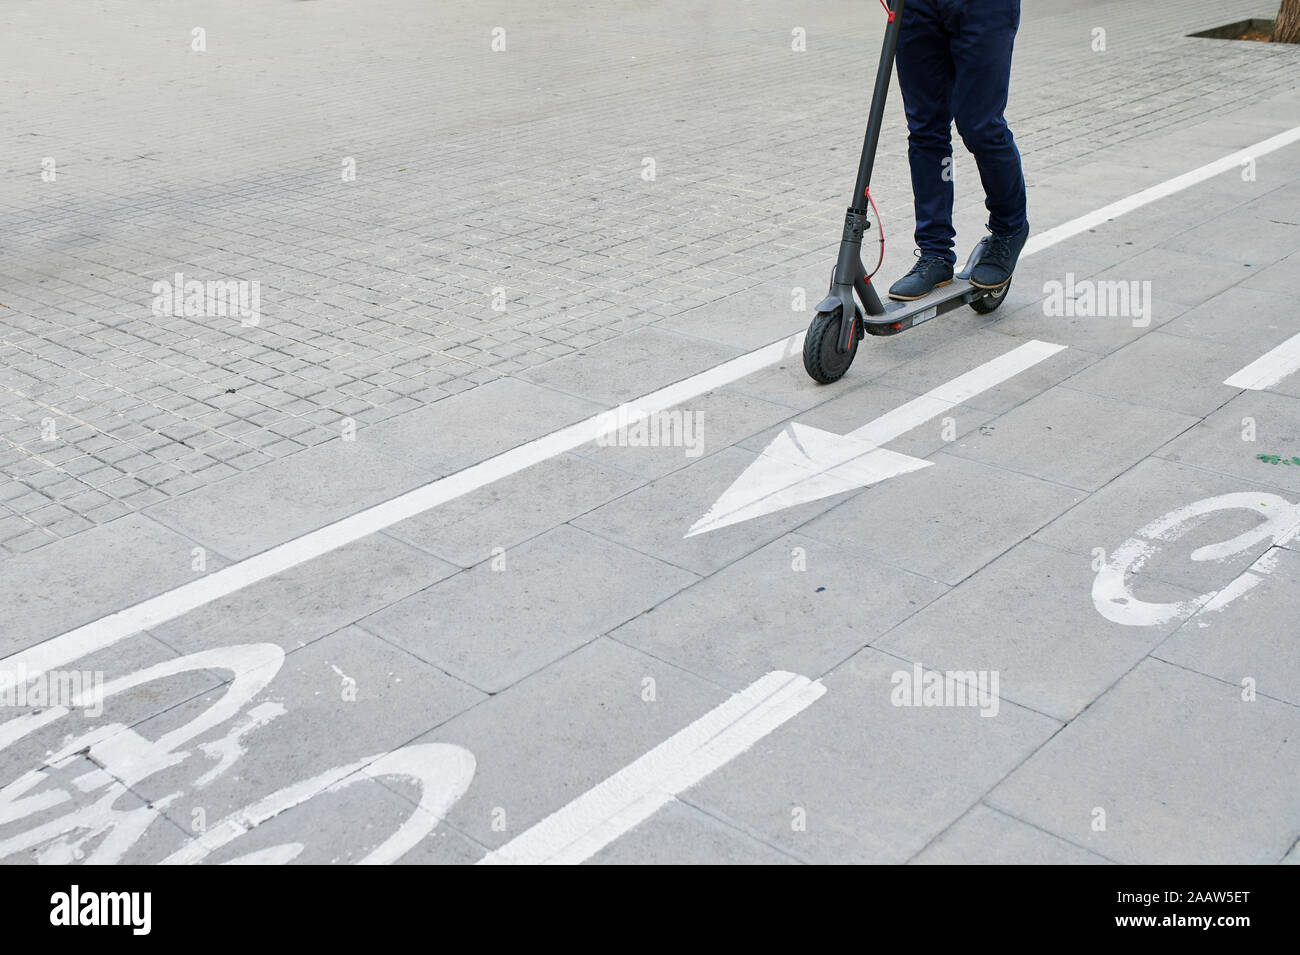 Die Beine des Menschen Reiten e-Scooter auf dem Fahrrad Lane in der Stadt Stockfoto